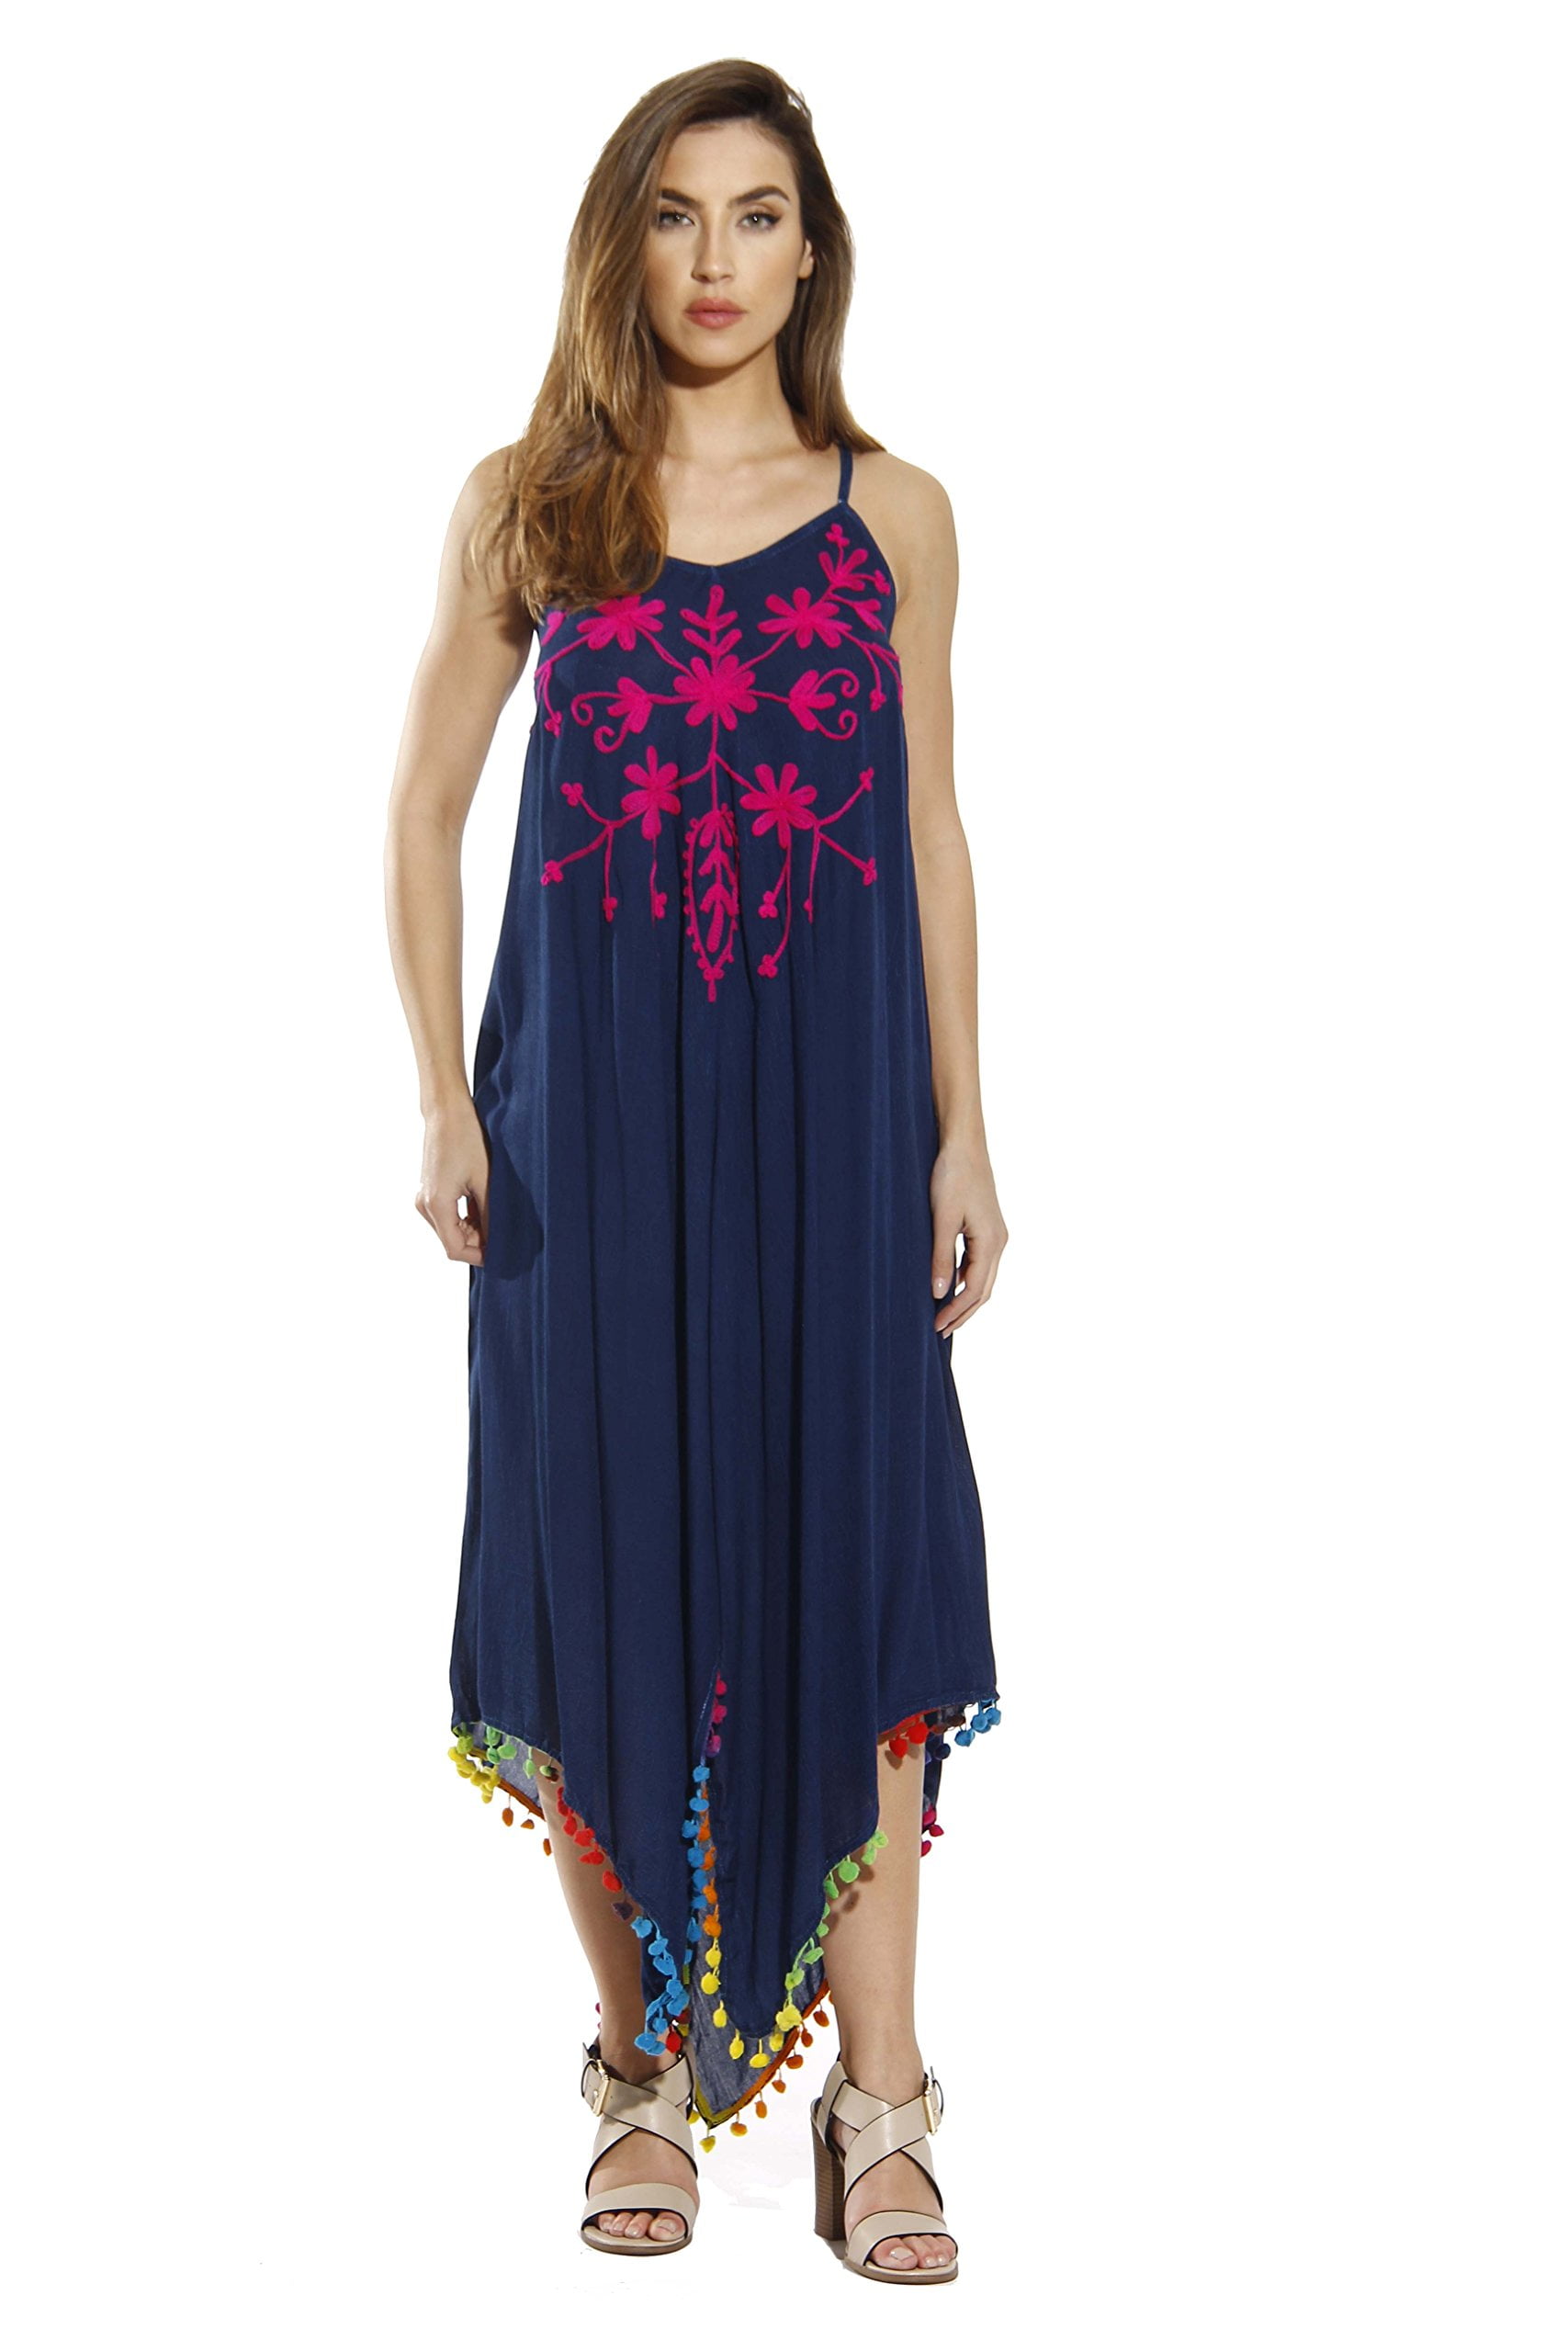 Riviera Sun Dress / Pom Pom Dresses for Women (Dark Denim with Fuchsia ...